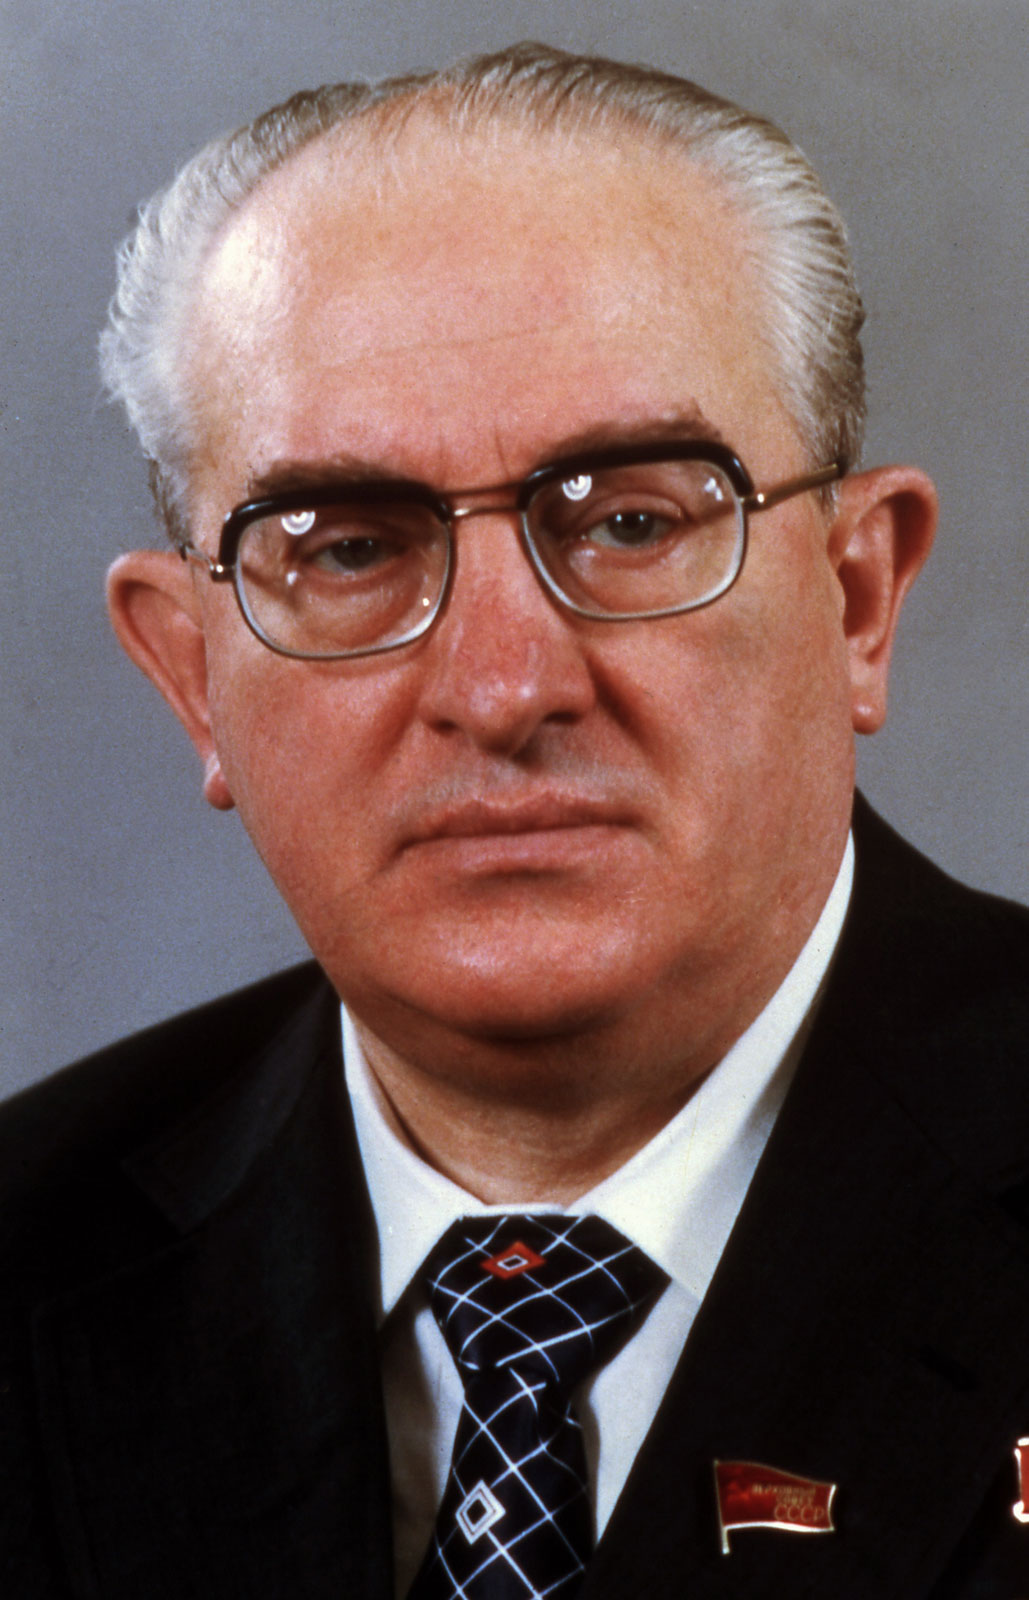 Yury-Andropov-head-KGB-1982.jpg